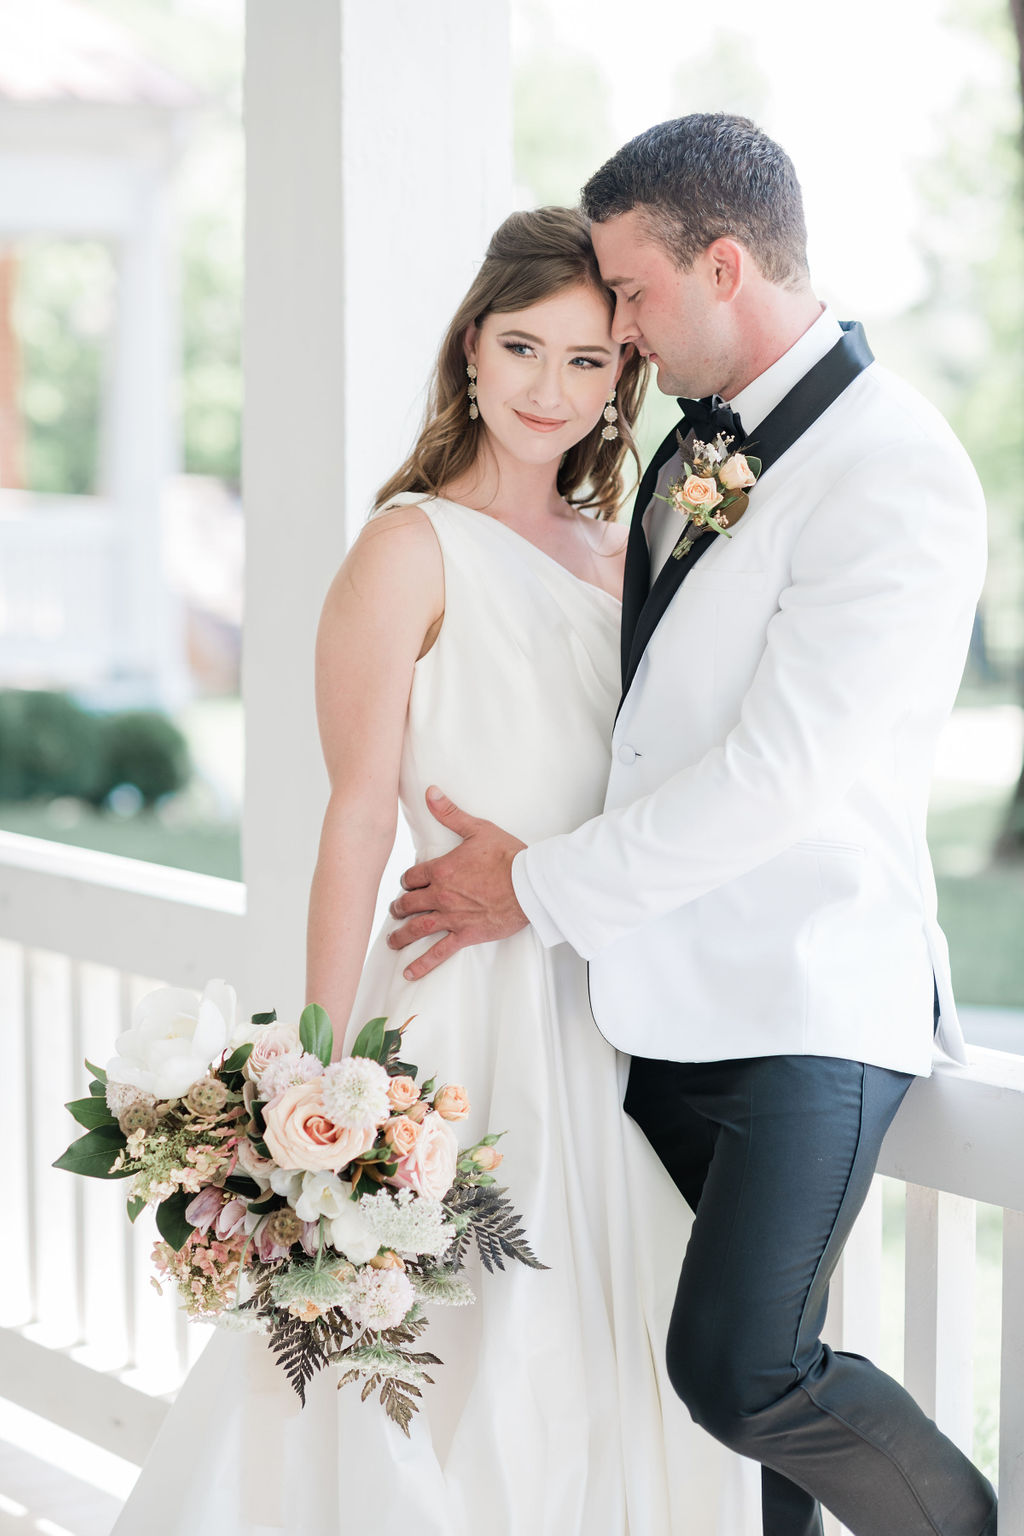 Nashville wedding photographer Maria Gloer Photography